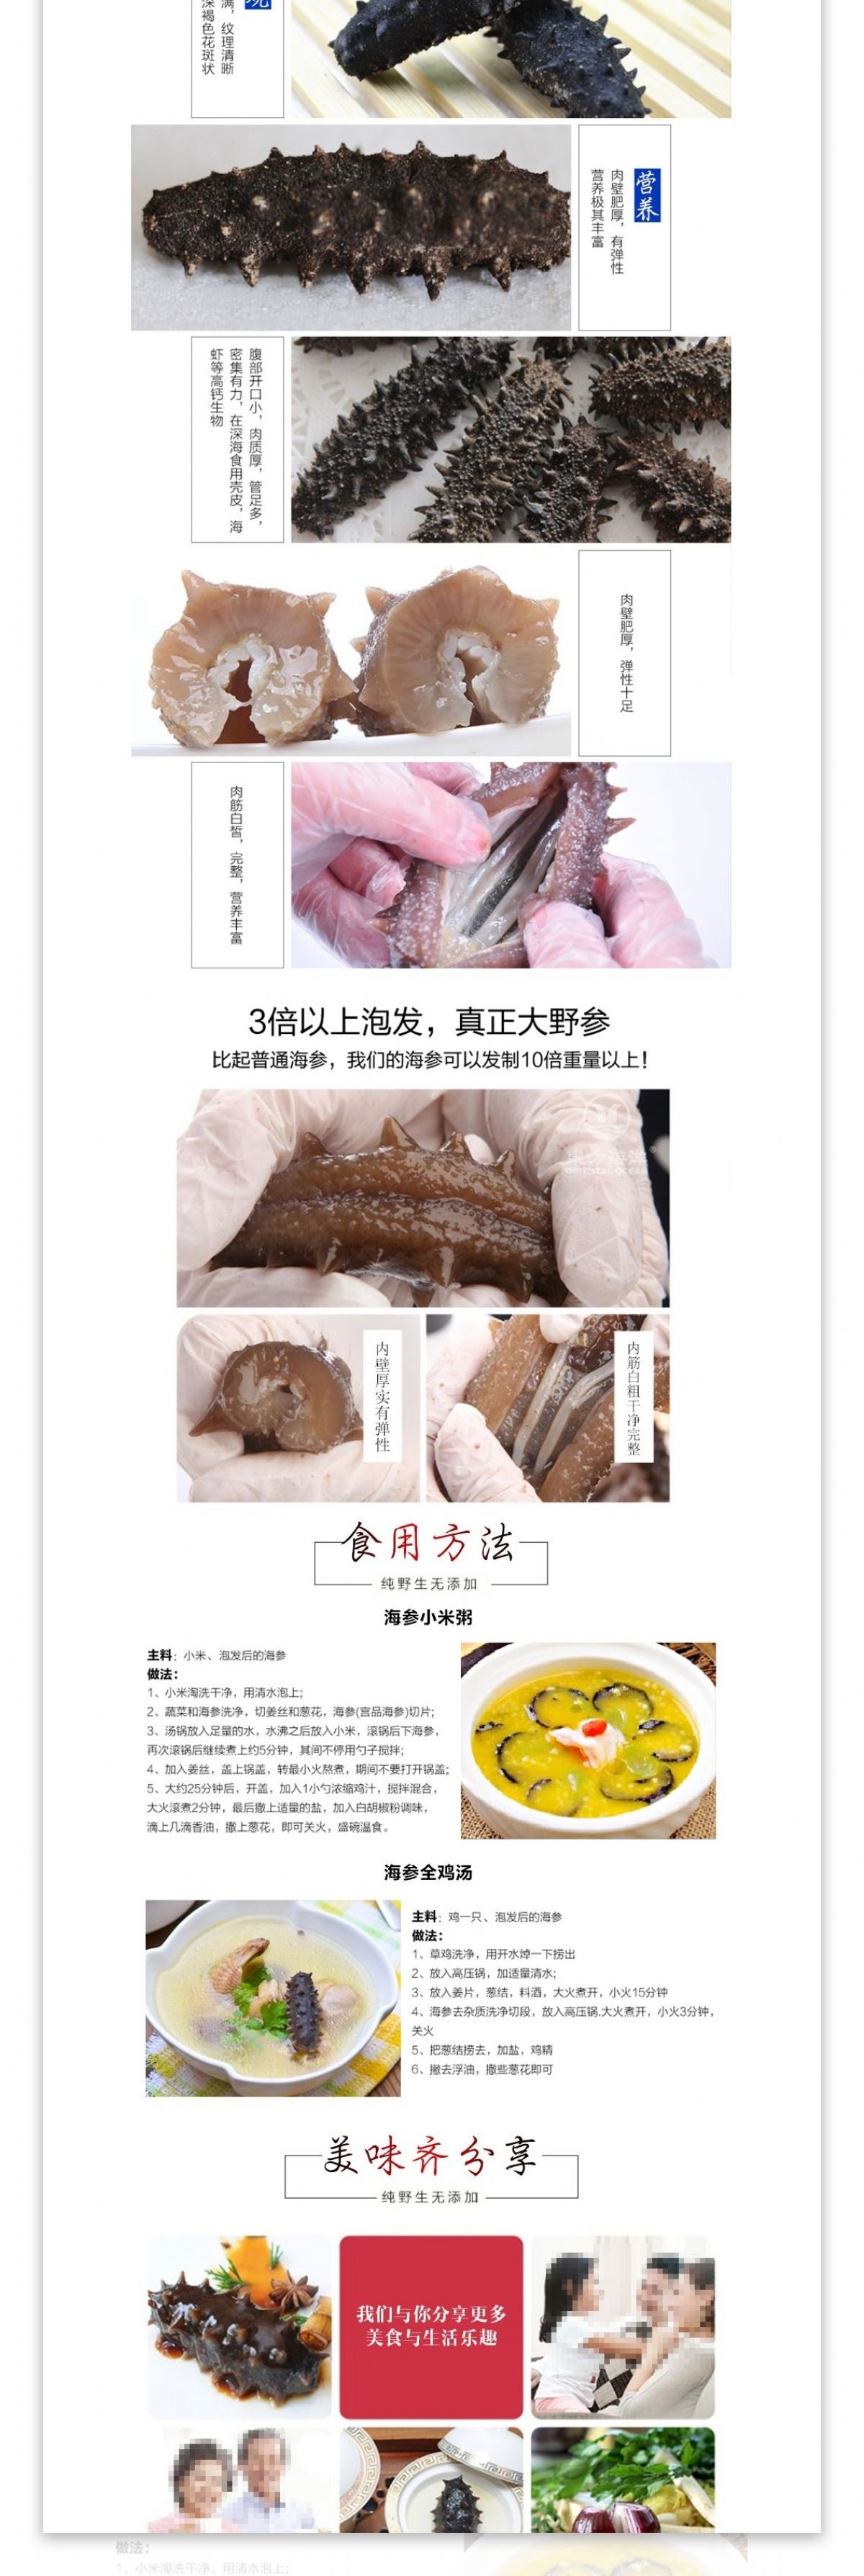 创意中国风海参美食详情页